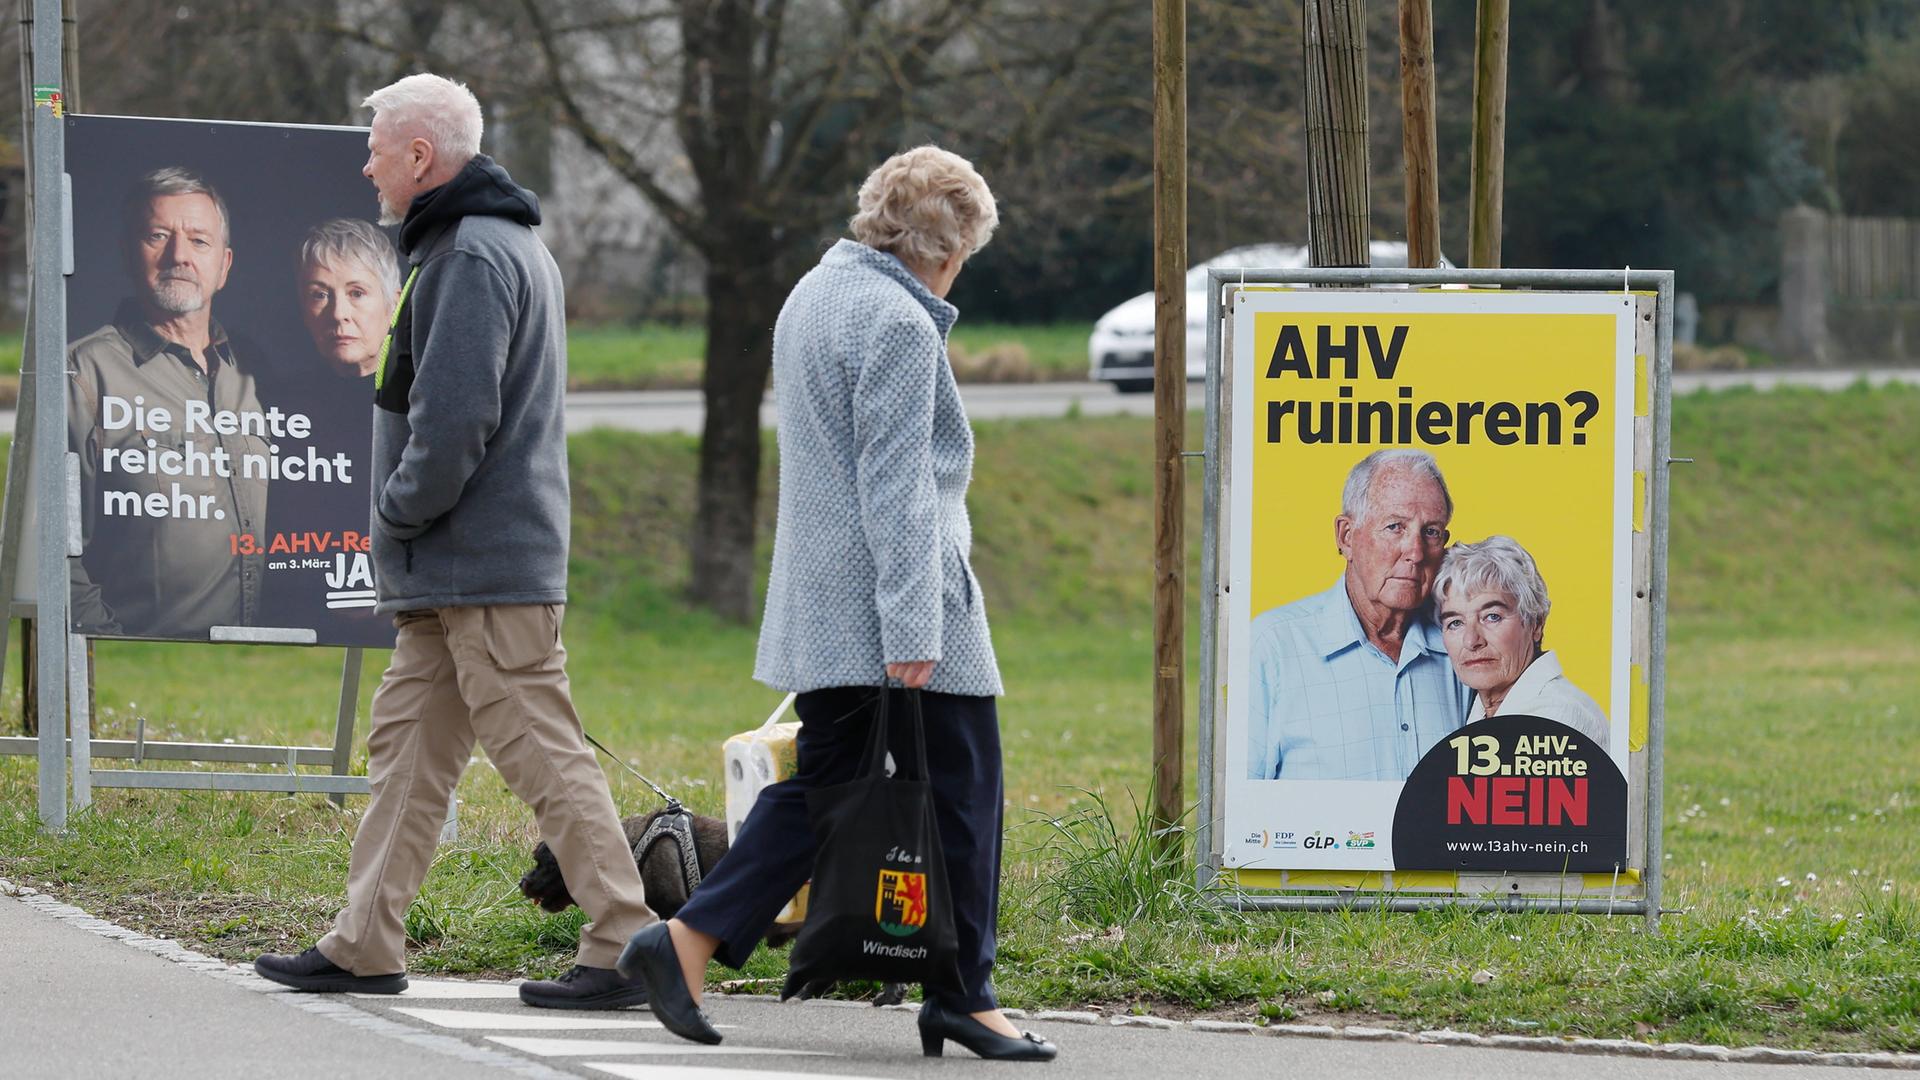 Ja und Nein Plakat in der Schweiz zur Abstimmung der 13.Rente aus der staatlichen Rentenkasse AHV.